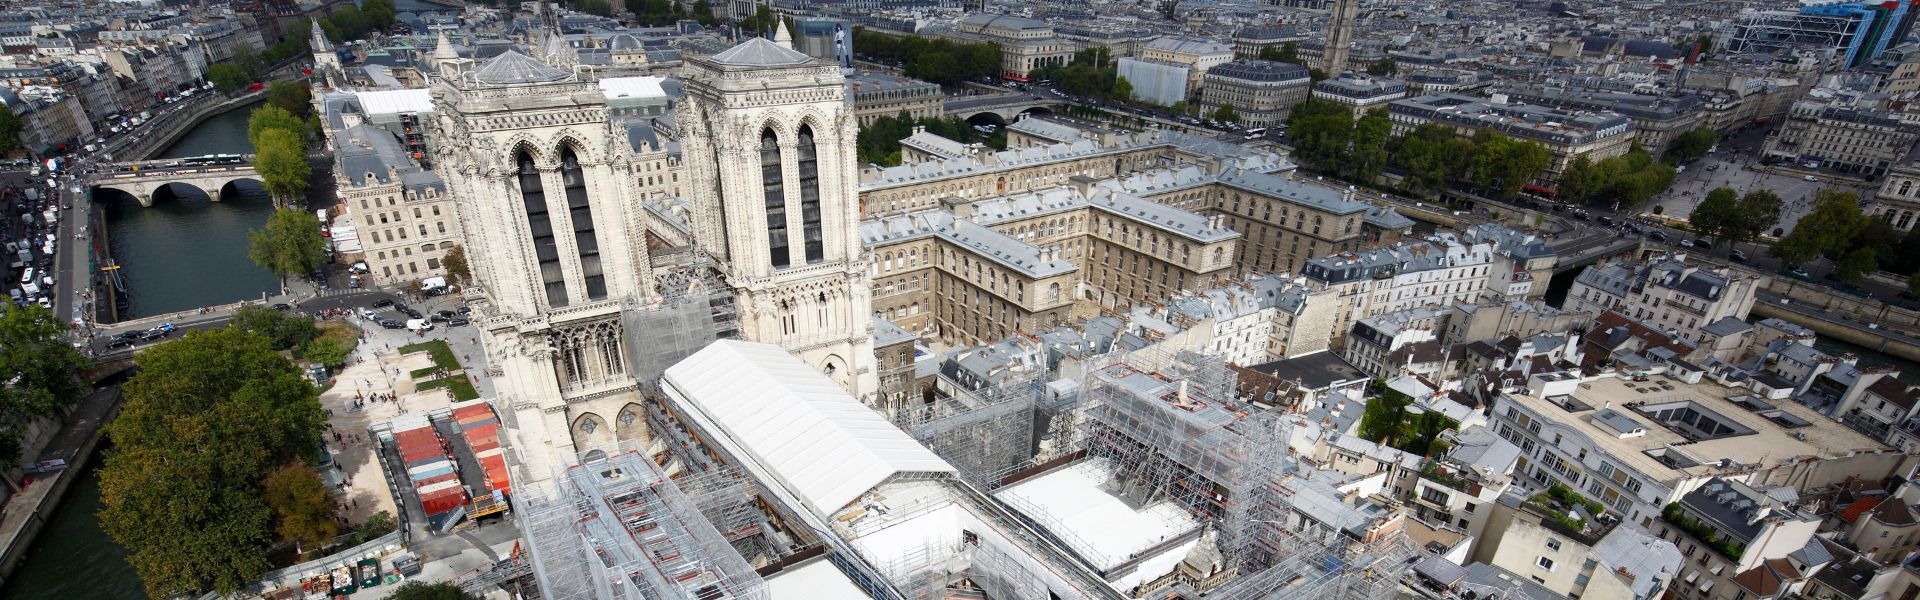 Notre-Dame de Paris Cathedral - David Bordes ©Etablissement public RNDP